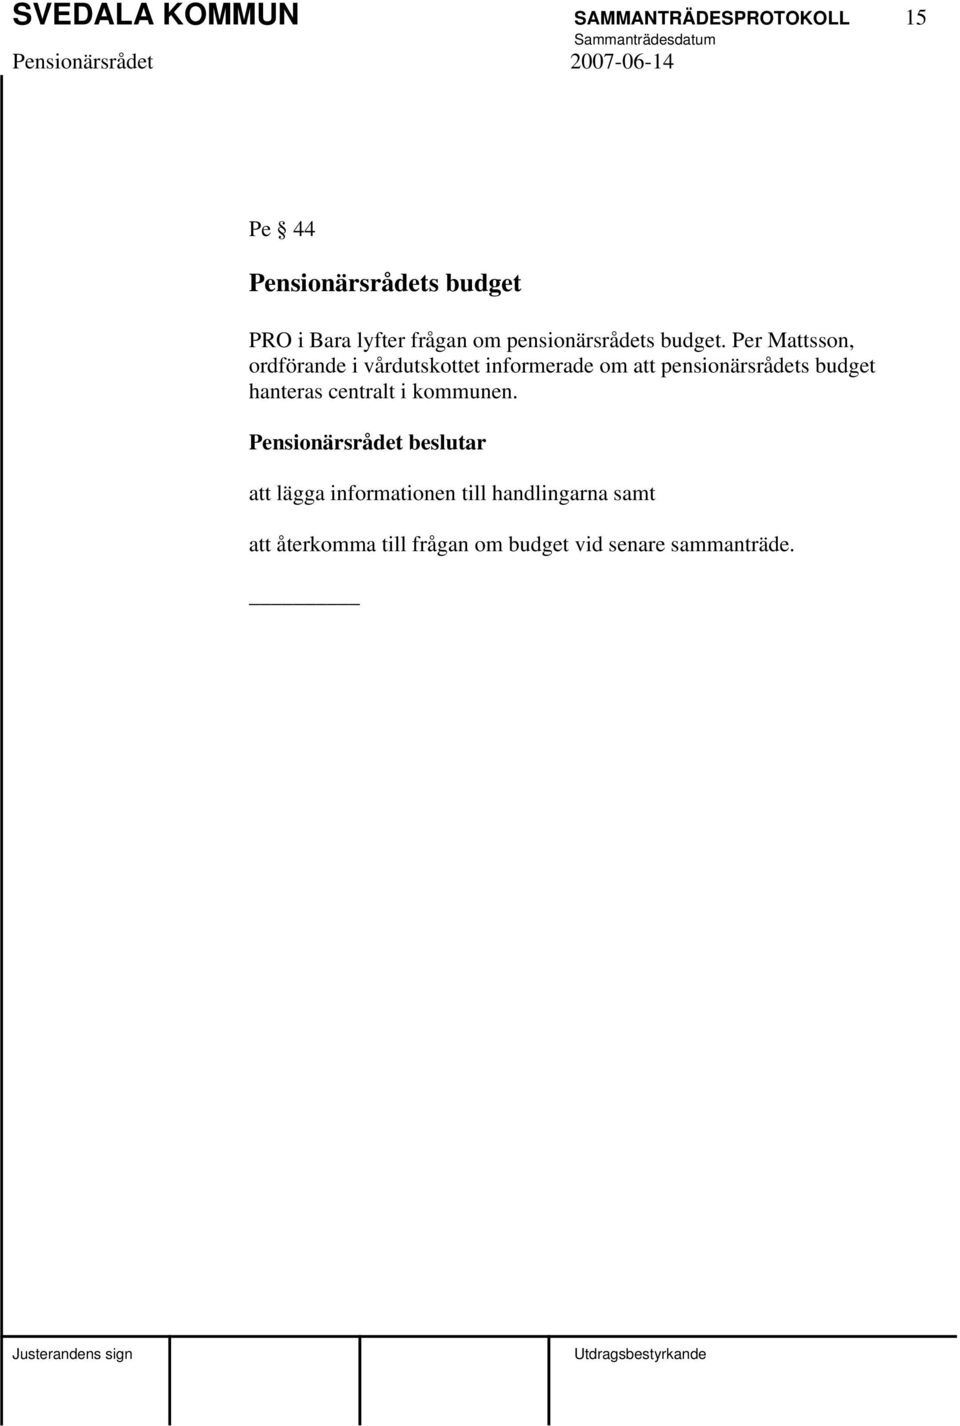 Per Mattsson, ordförande i vårdutskottet informerade om att pensionärsrådets budget